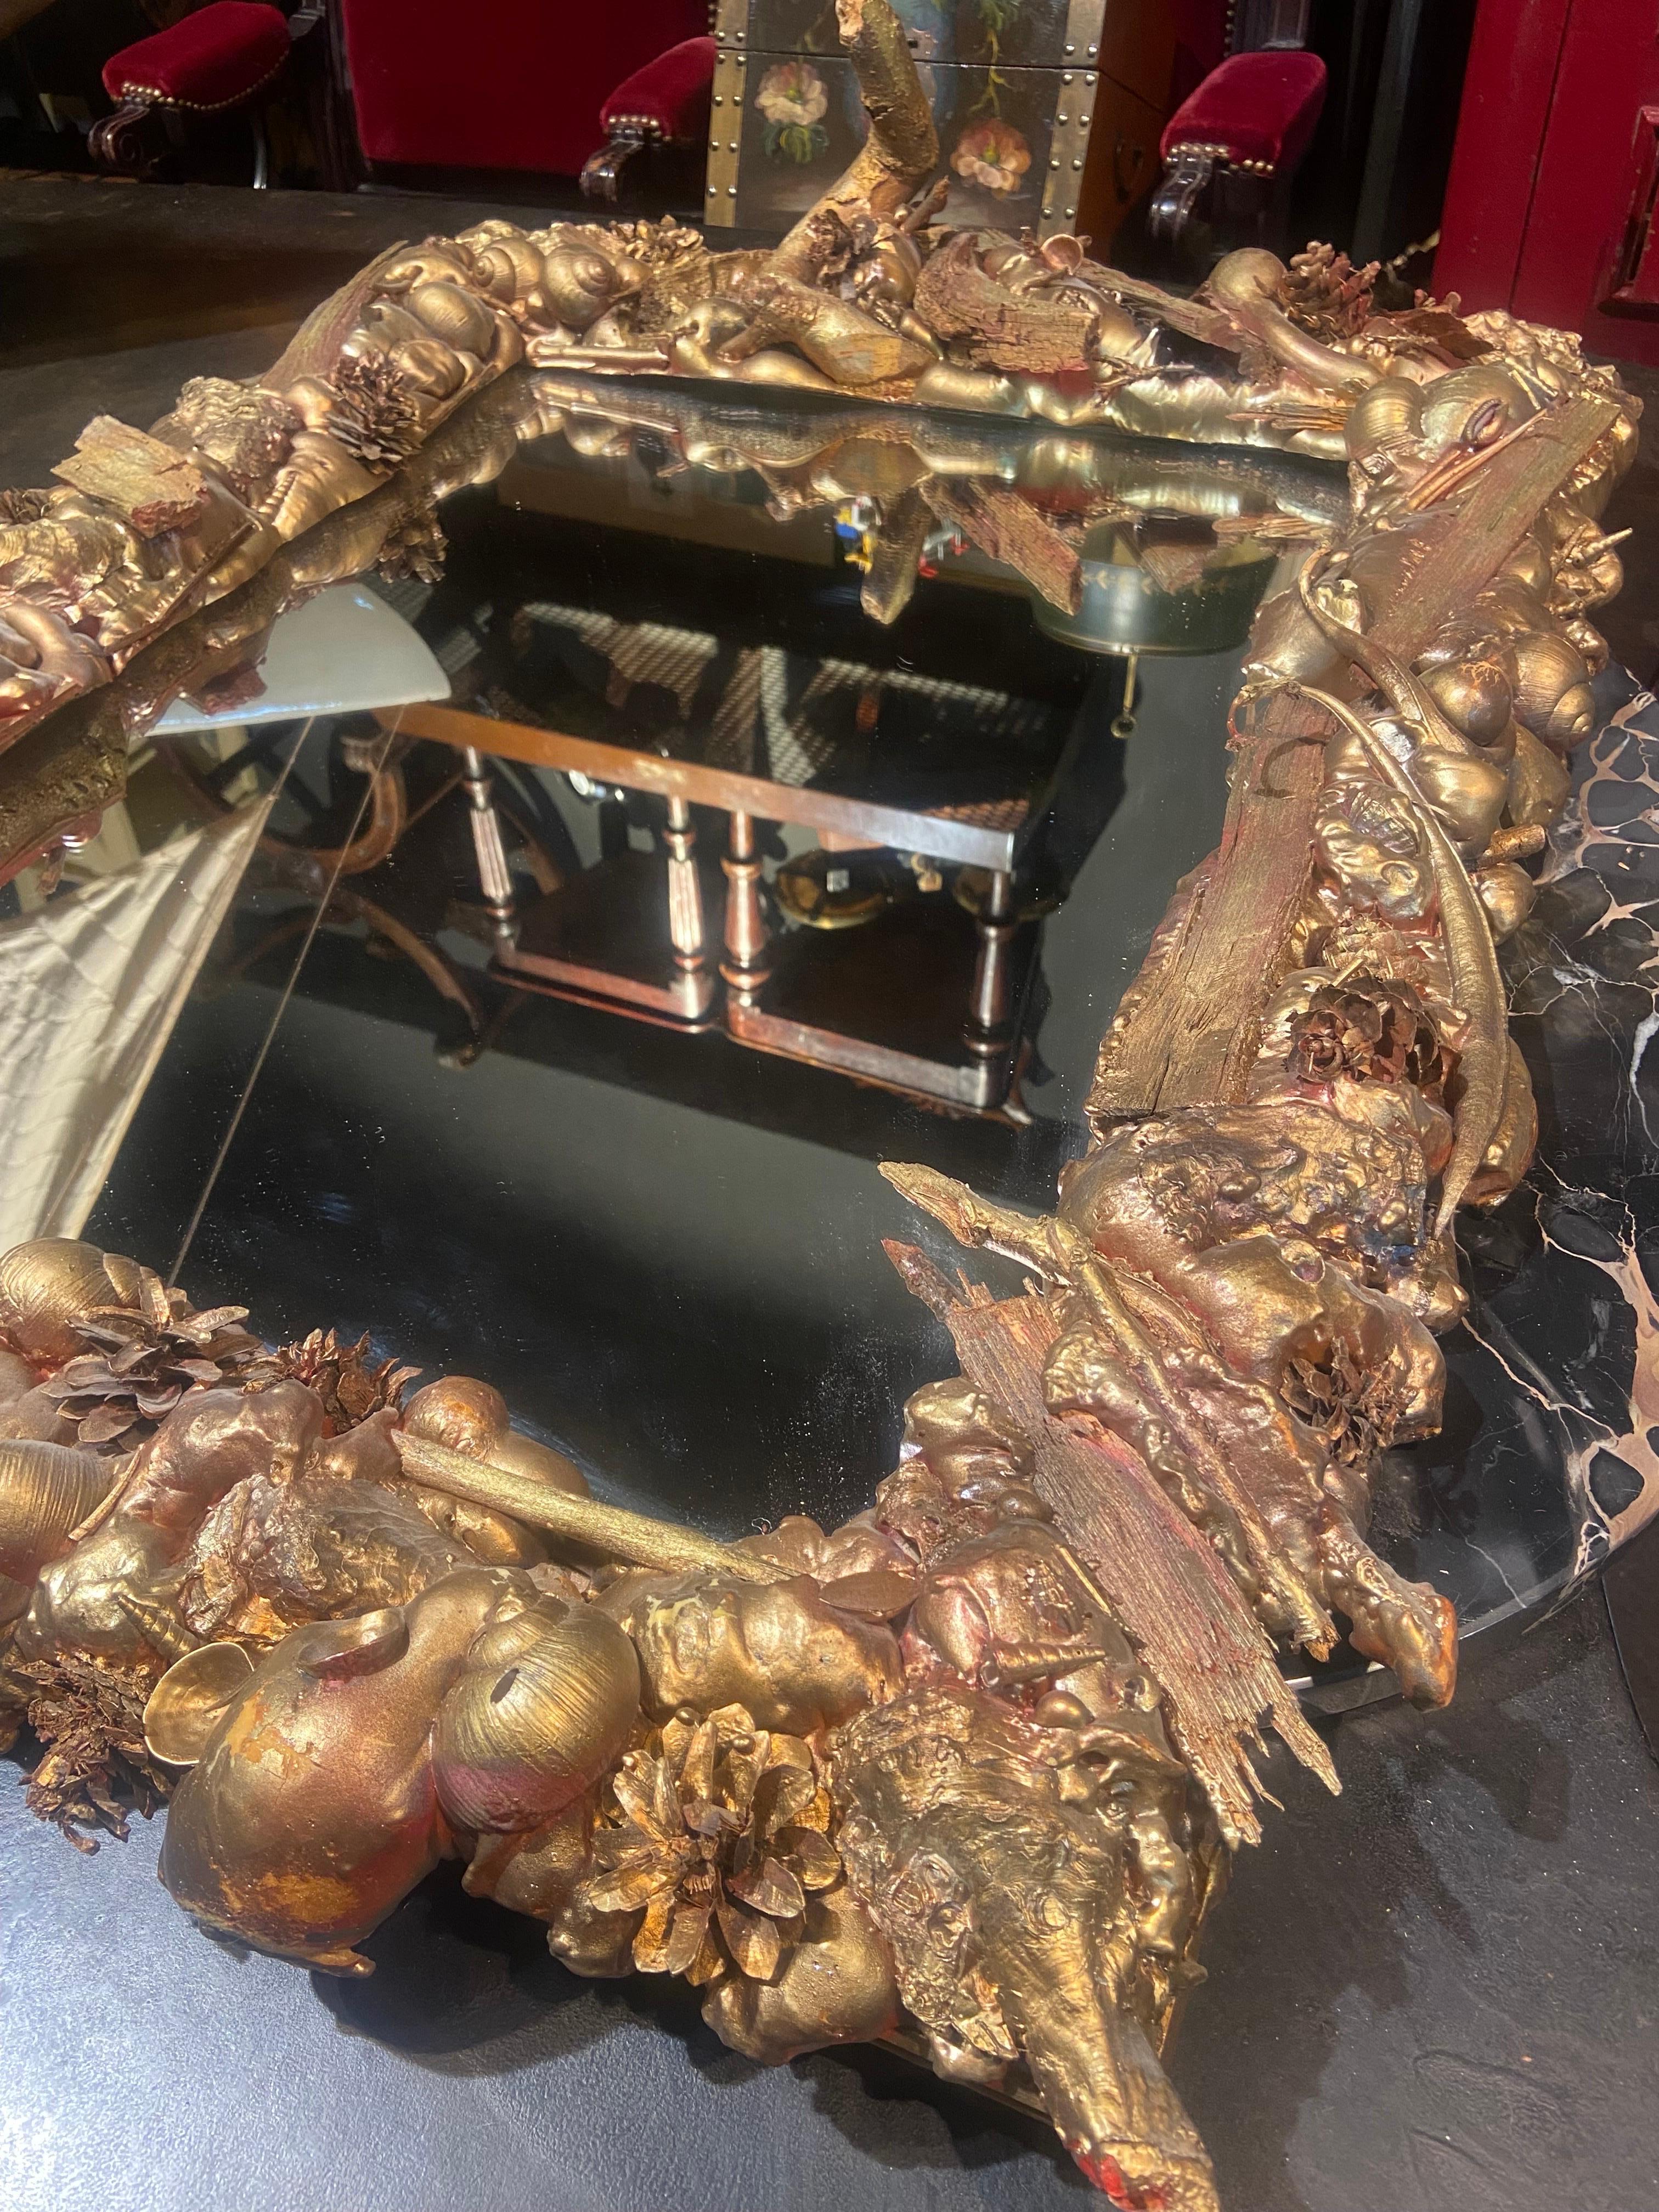 Unique grand miroir hade fait de matériaux naturels collectés dans les bois et la mer et peints en bronze. Une œuvre d'art très délicate et très belle.
France, vers 1970